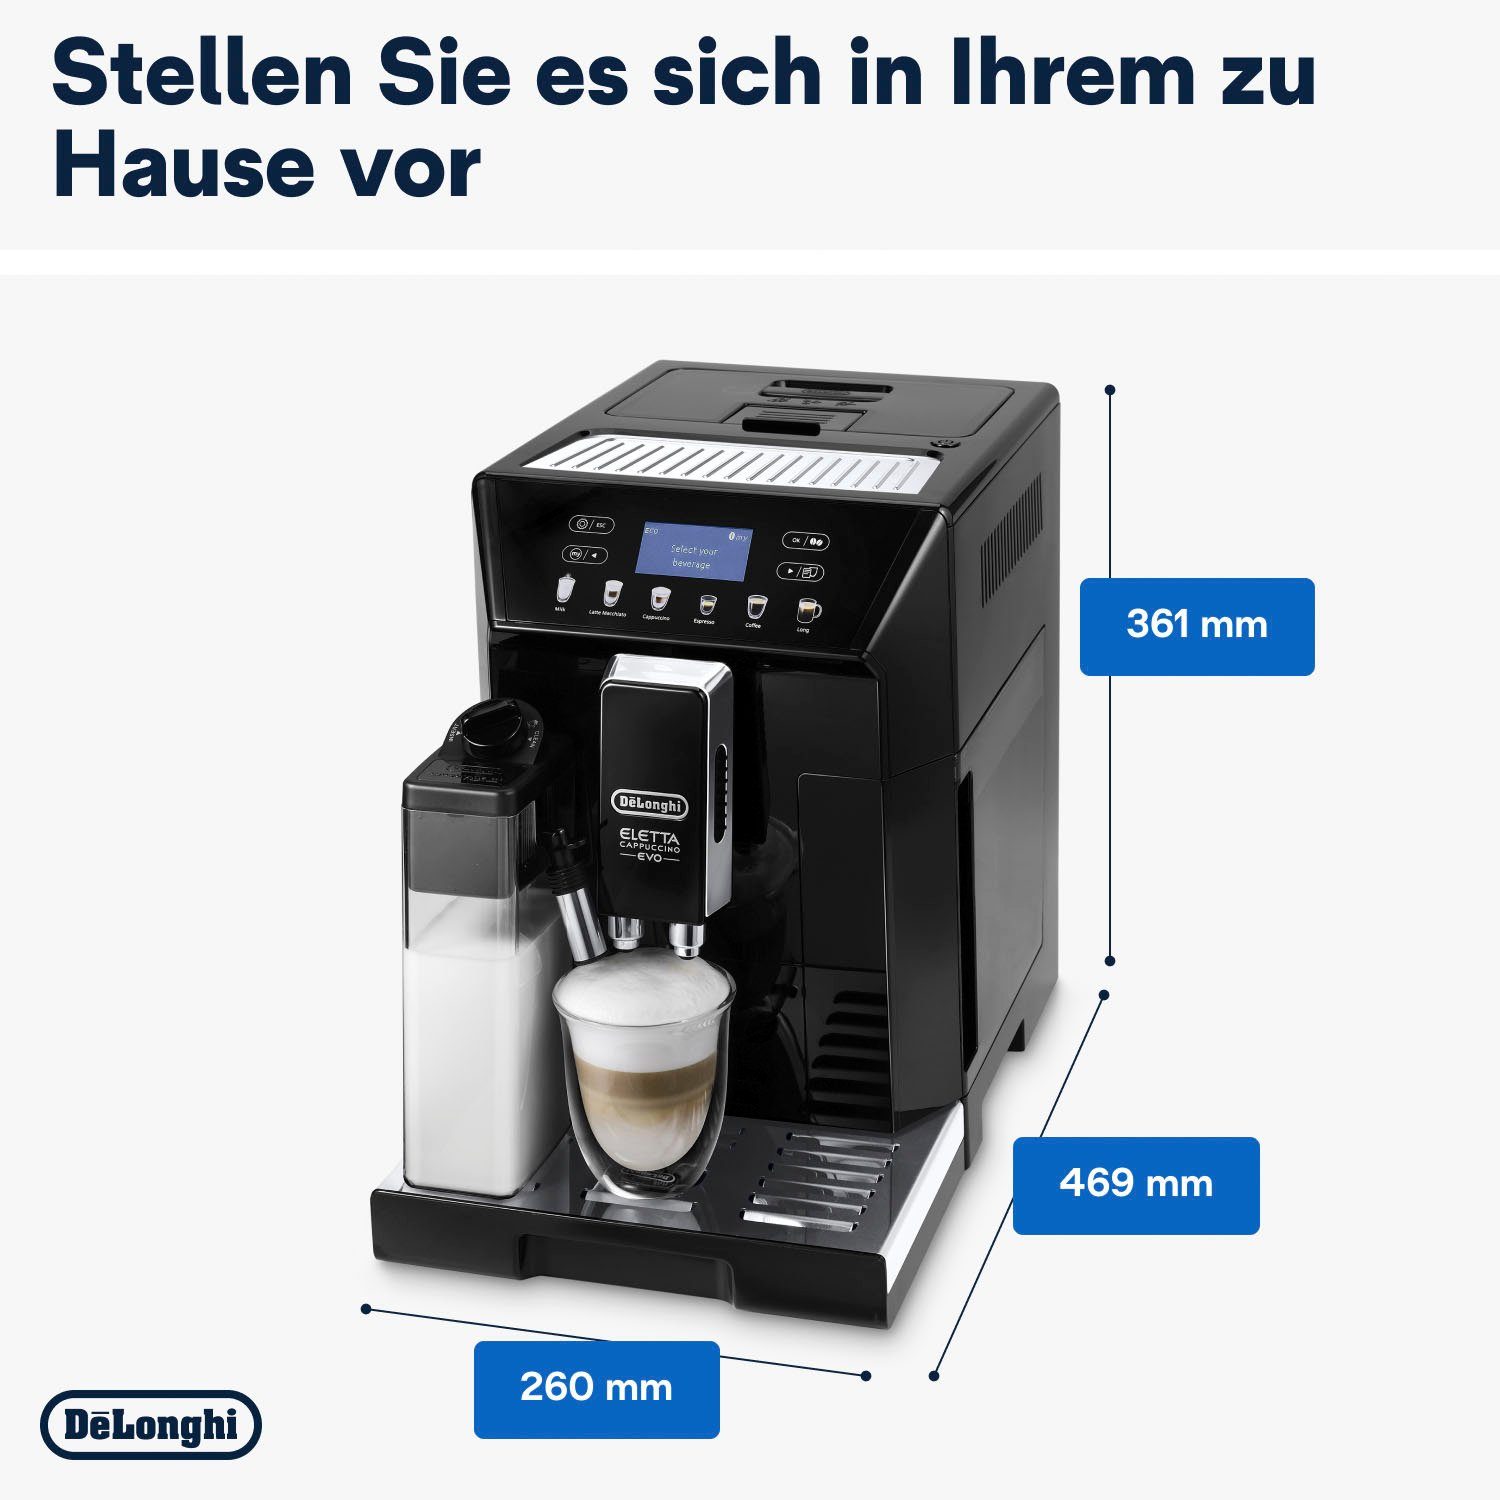 De'Longhi Kaffeevollautomat ECAM 46.860.B € inkl. UVP Evo, schwarz, im von 31,99 Eletta Pflegeset Wert